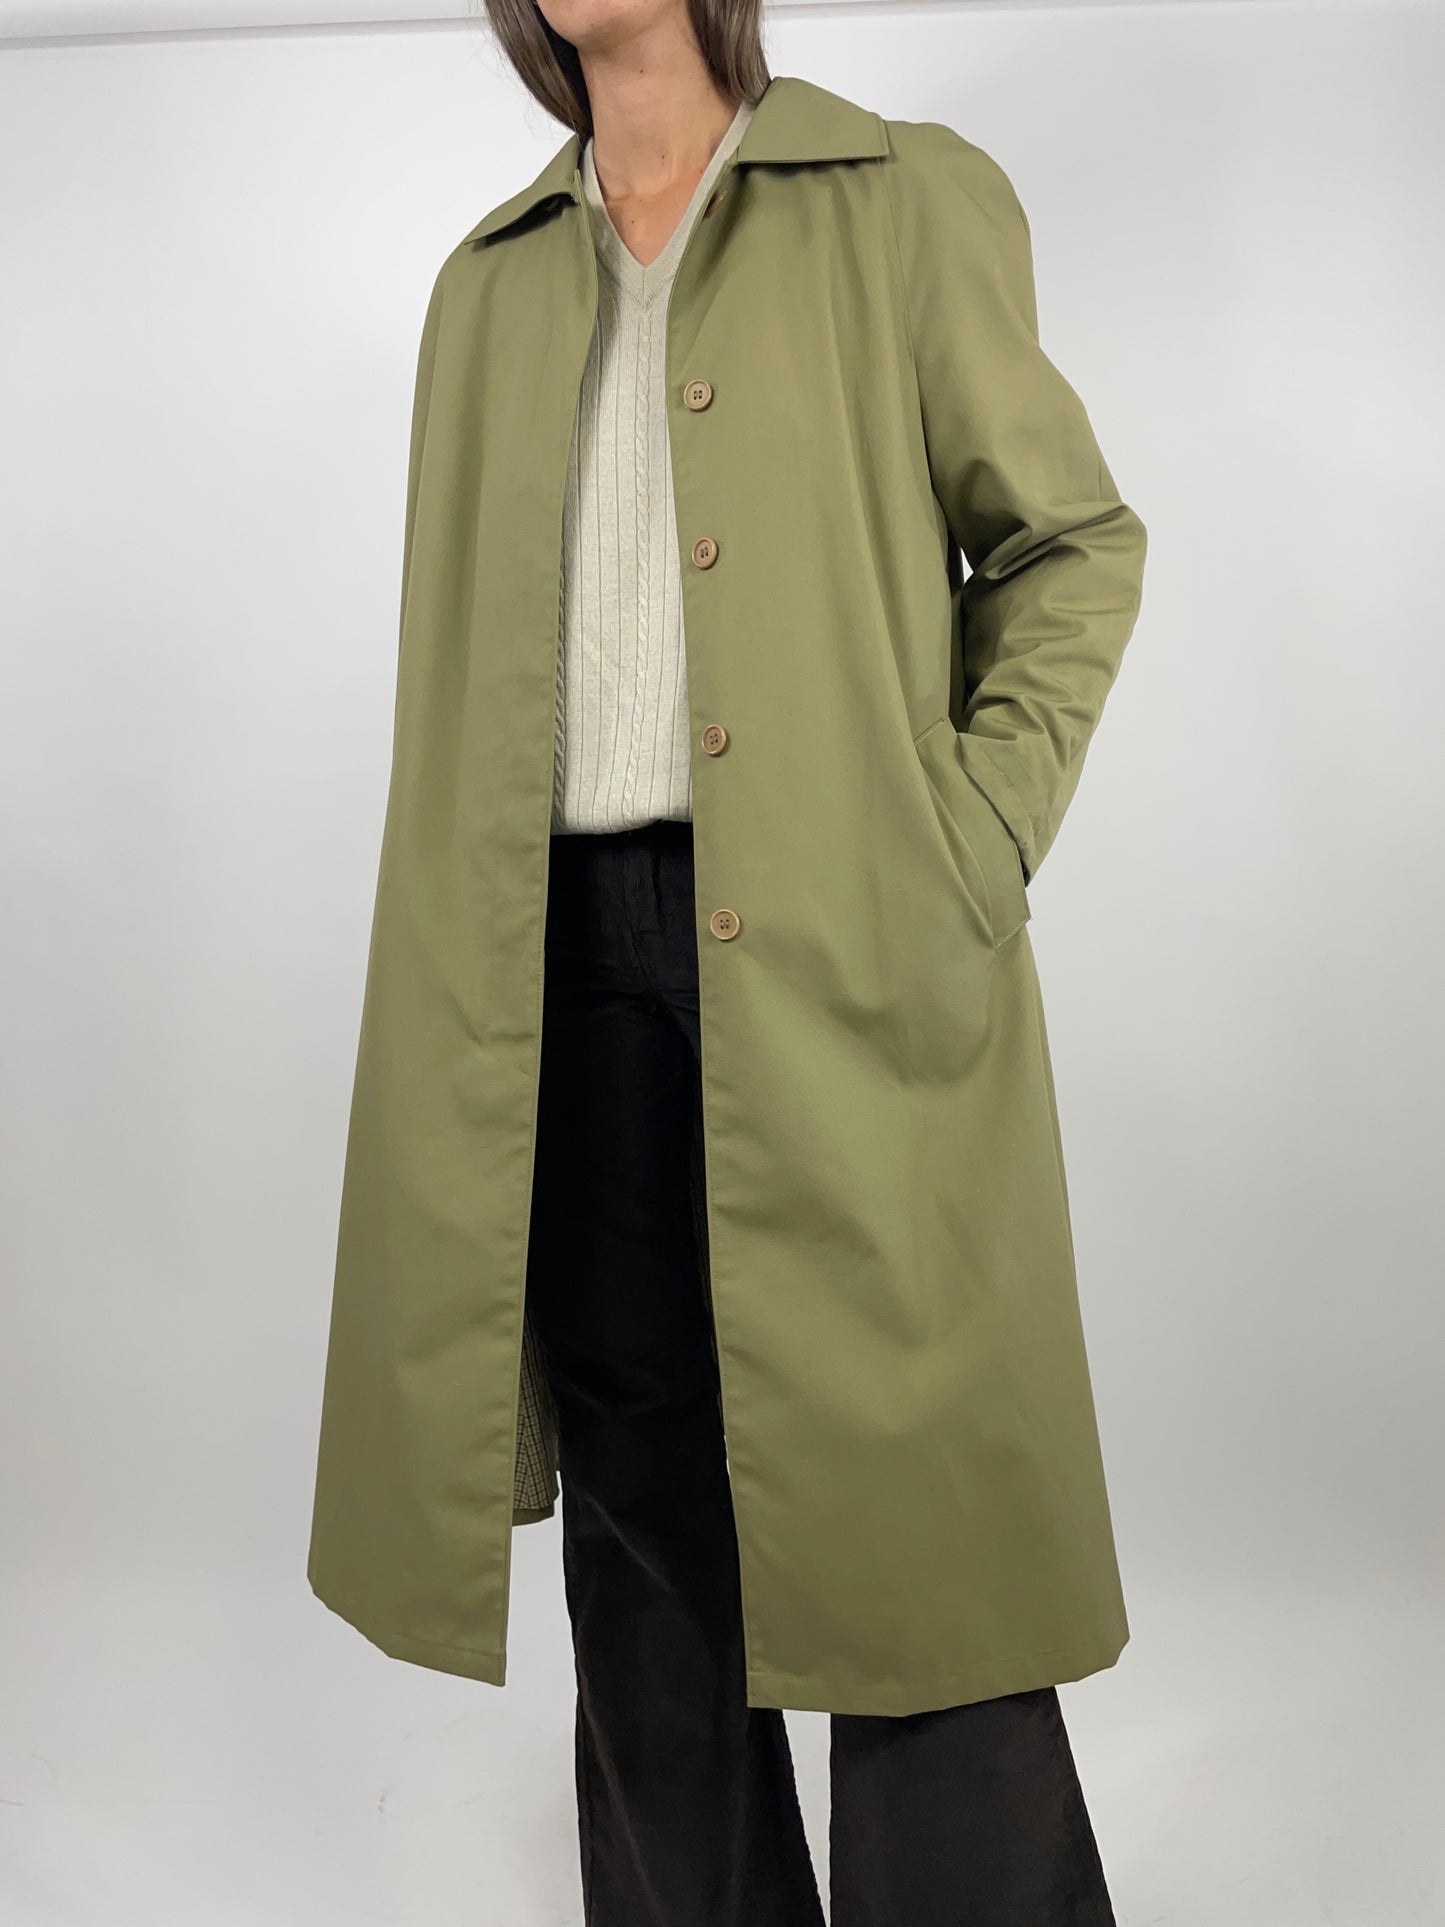 Trench coat 1980s